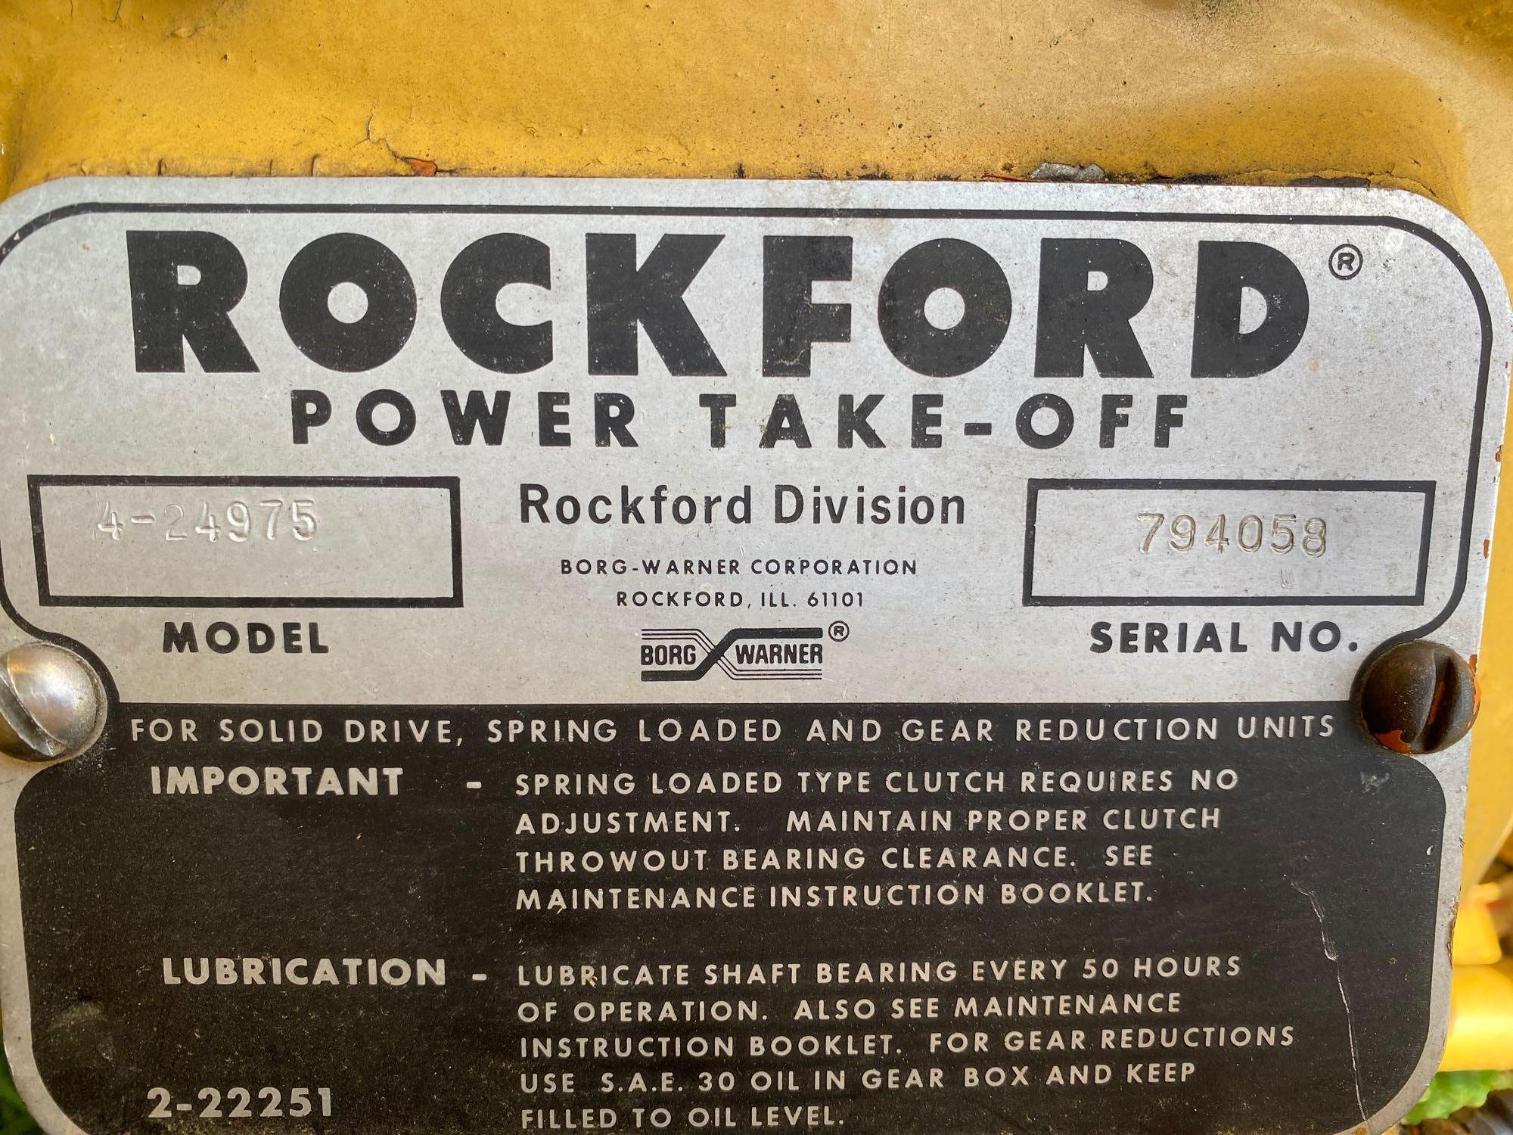 Image for Rockford Power Take Off Chipper, Model 4-24975 Serial #794058 Runs per seller 